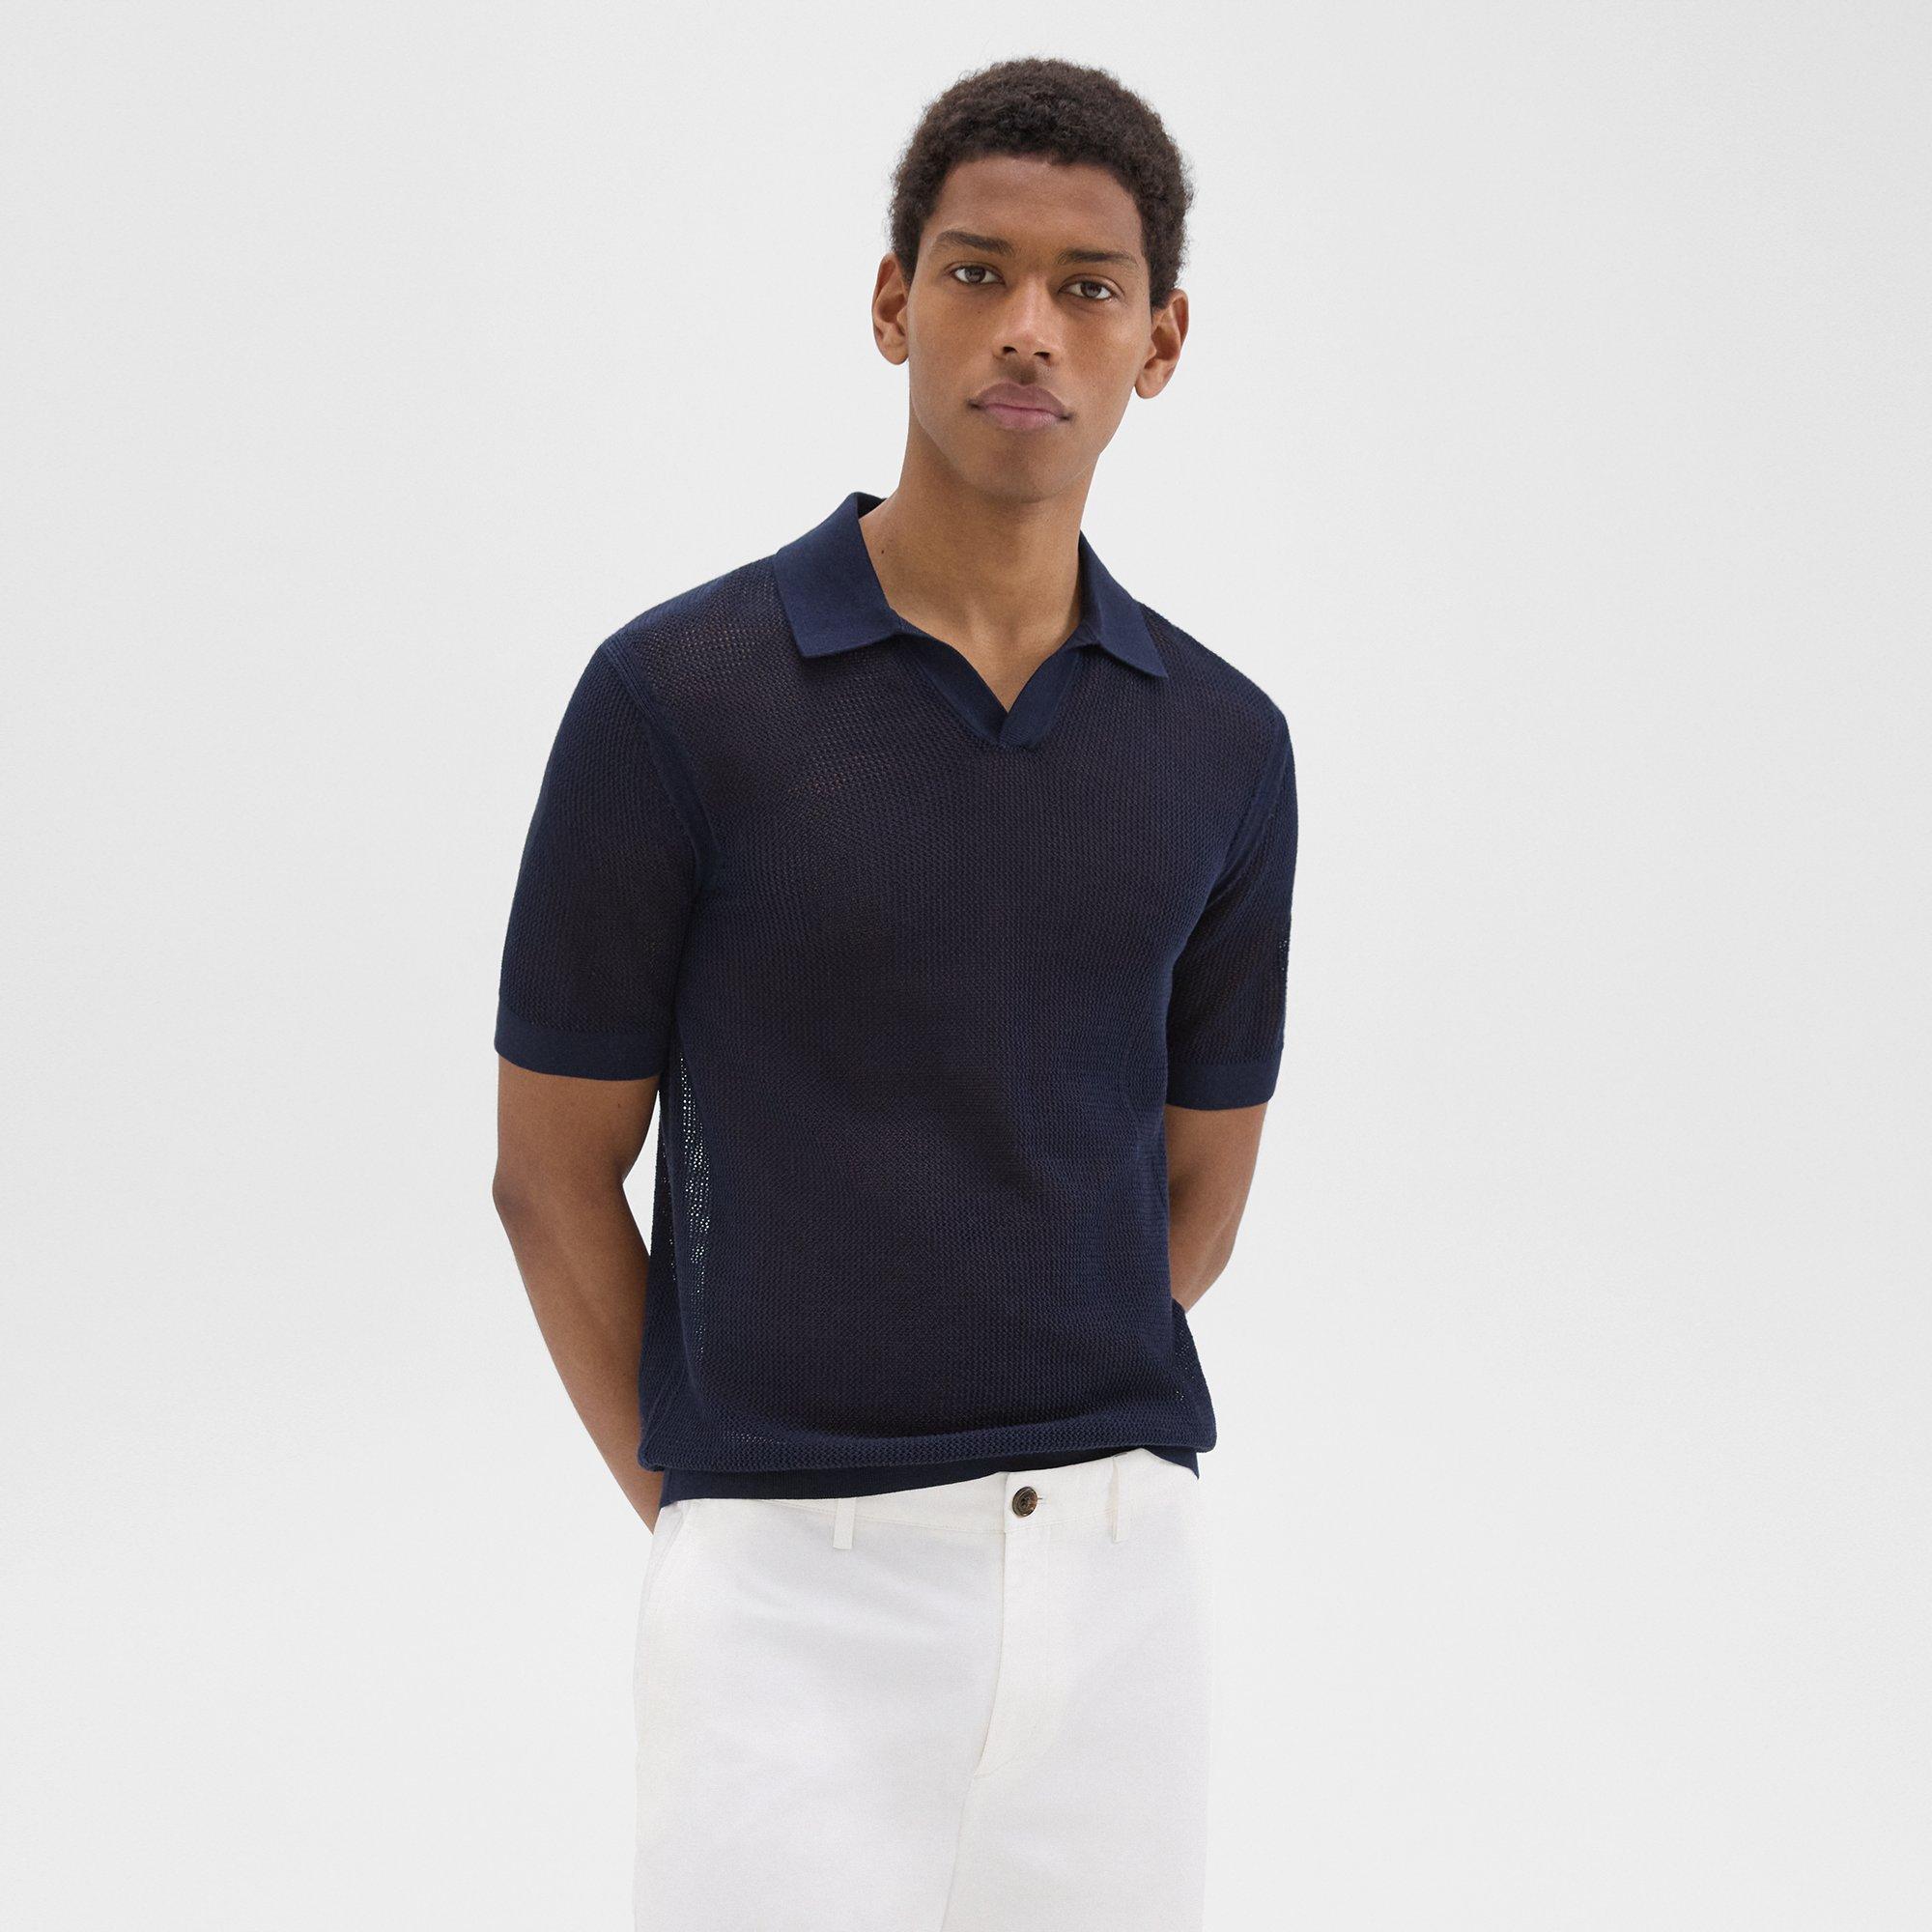 Brenan Polo Shirt in Cotton